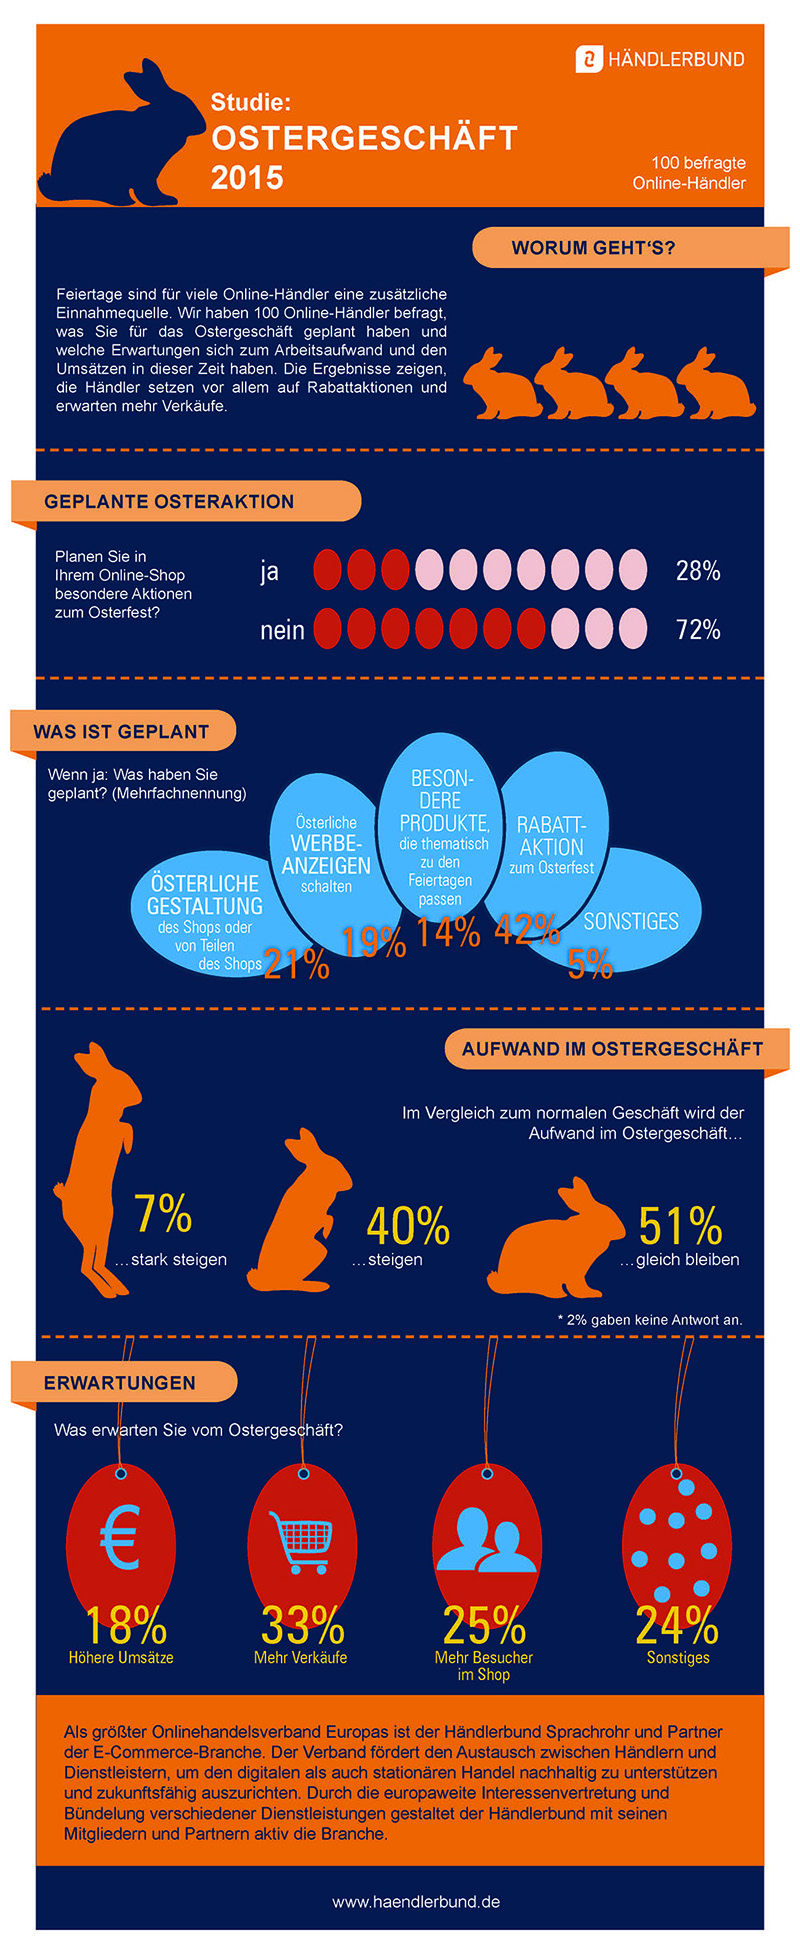 Händlerbund-Studie zum Ostergeschäft 2015 - Infografik